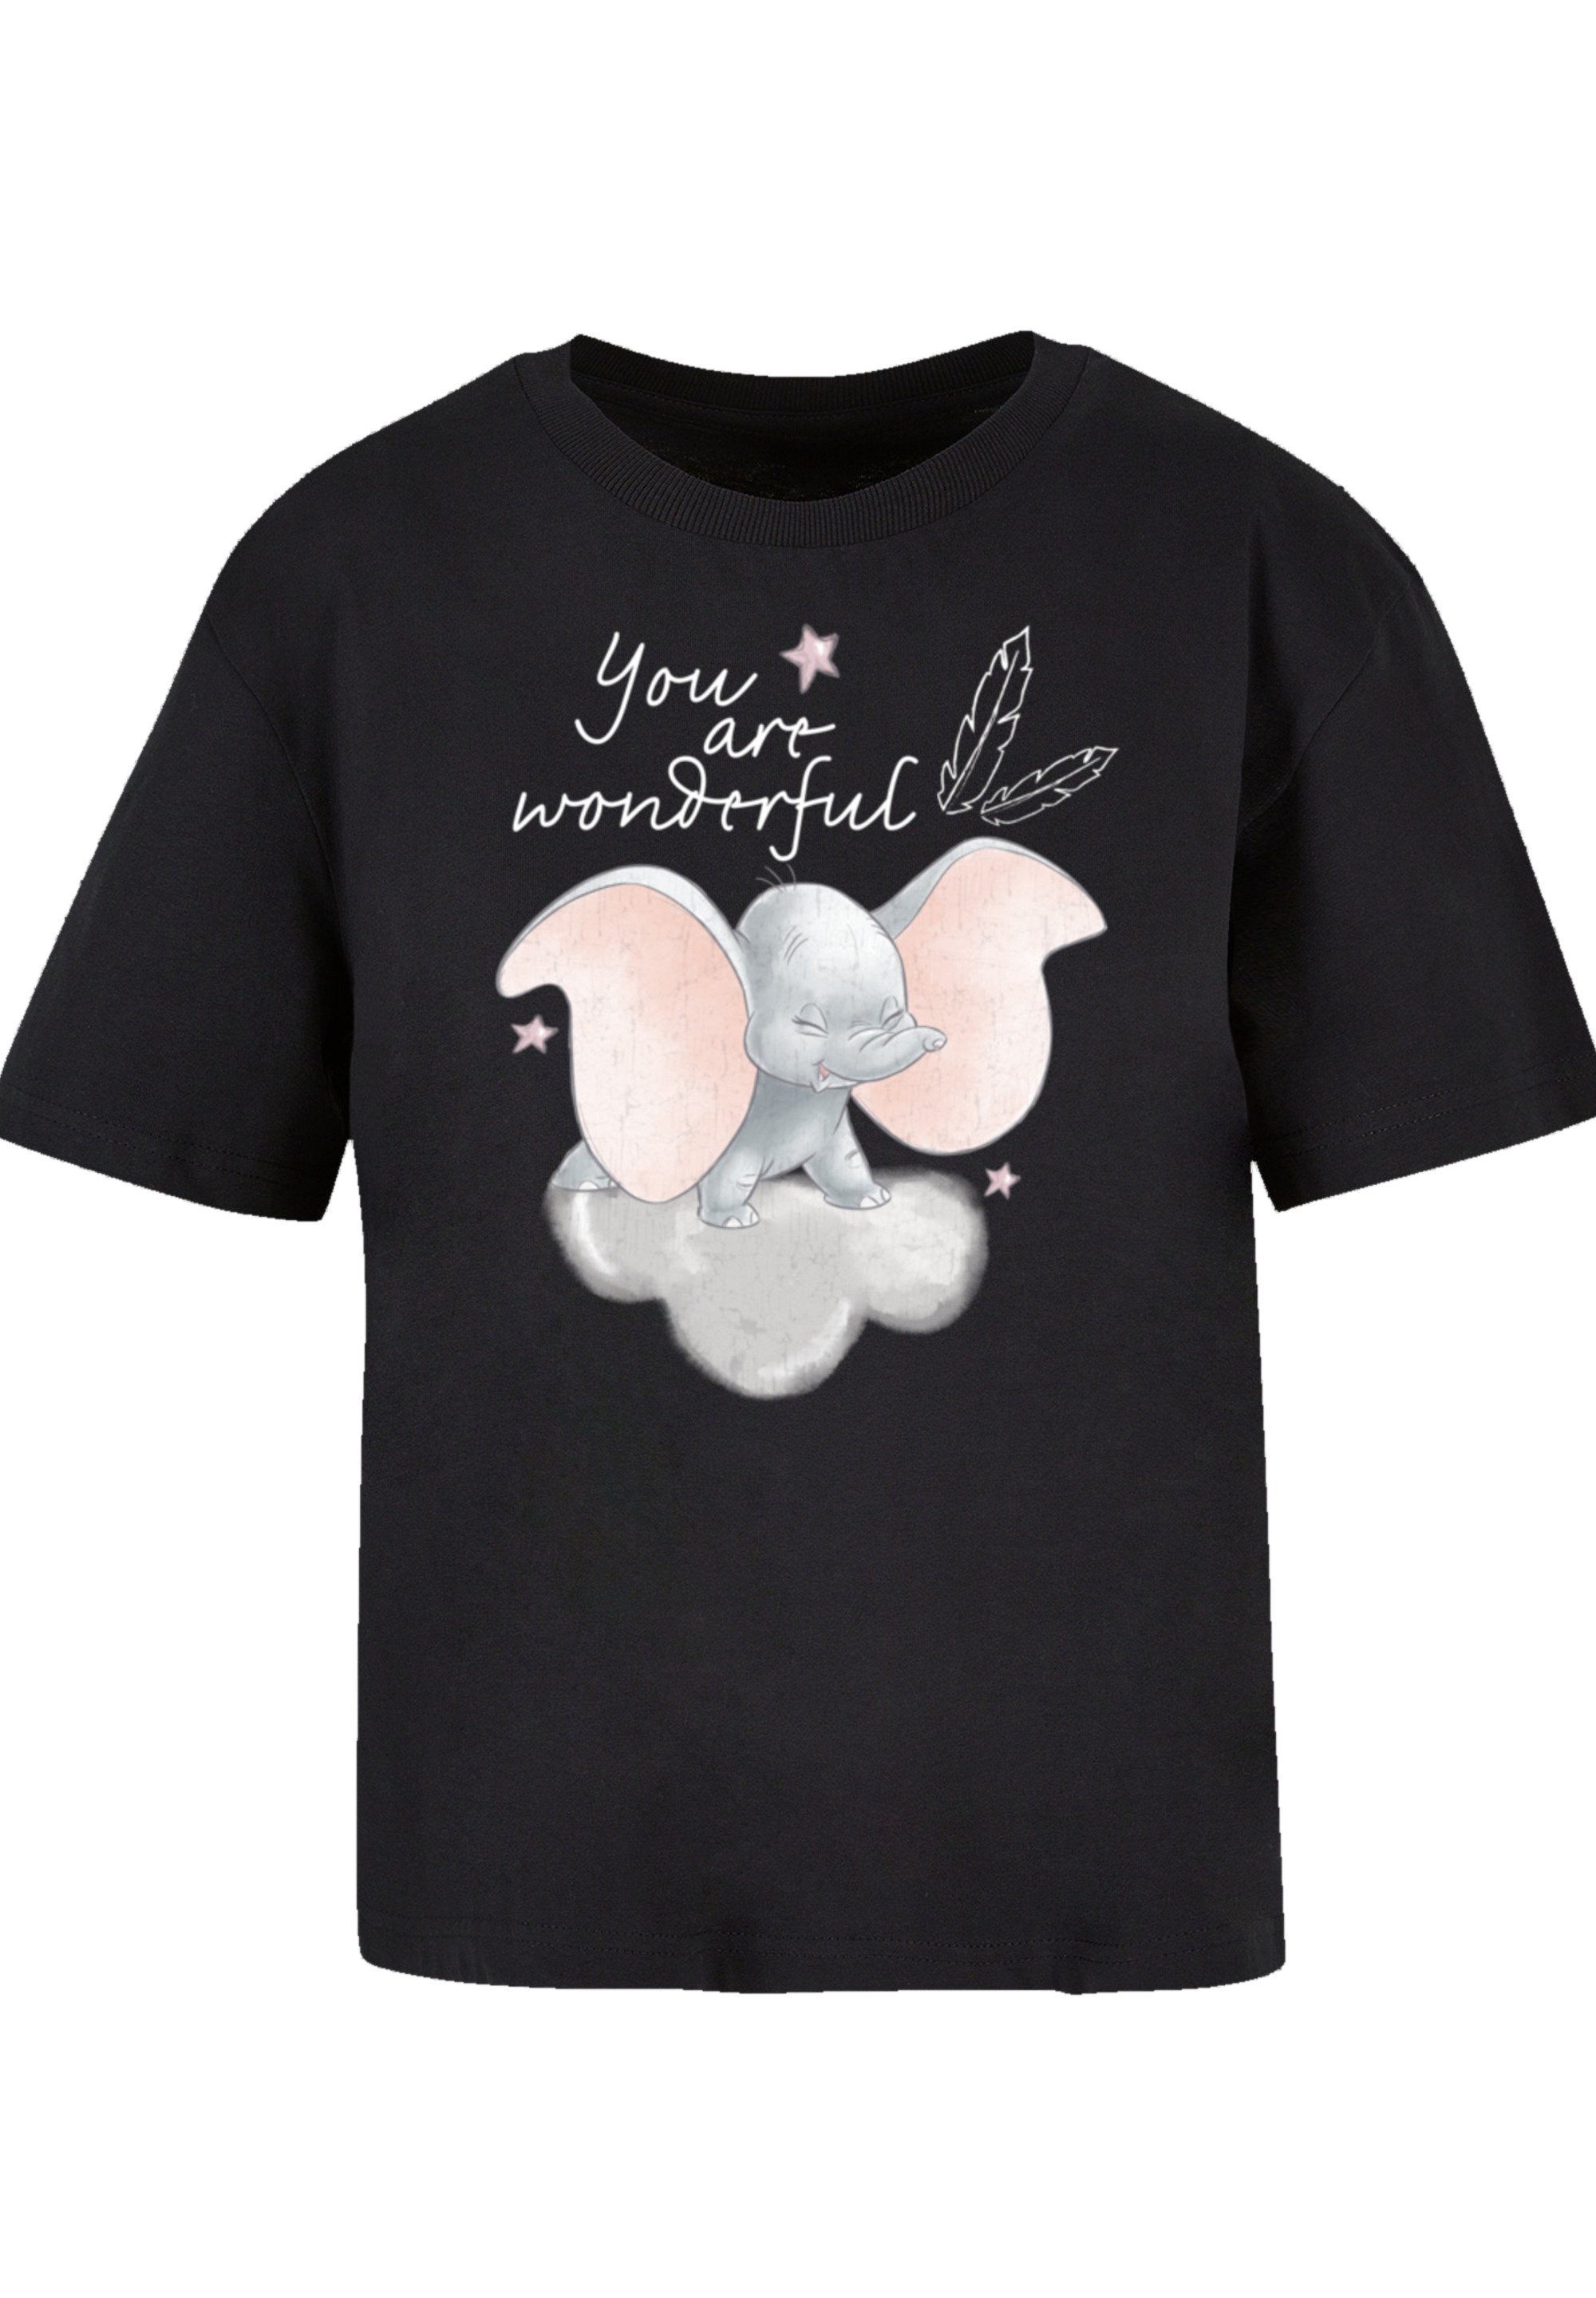 F4NT4STIC T-Shirt Disney vielseitig Wonderful Komfortabel Qualität, You Premium Are Dumbo und kombinierbar